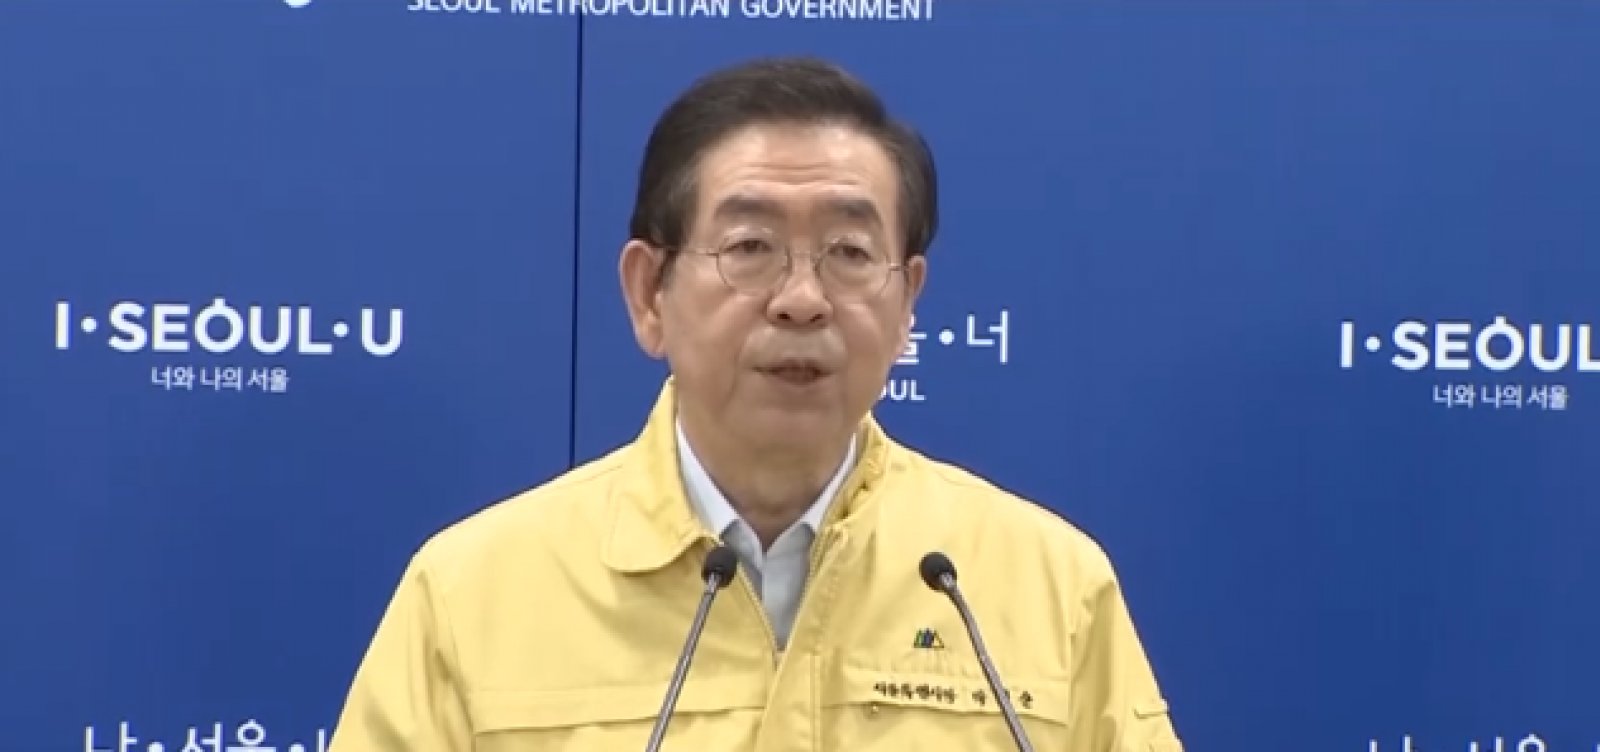 Prefeito de Seul, na Coreia do Sul, é encontrado morto